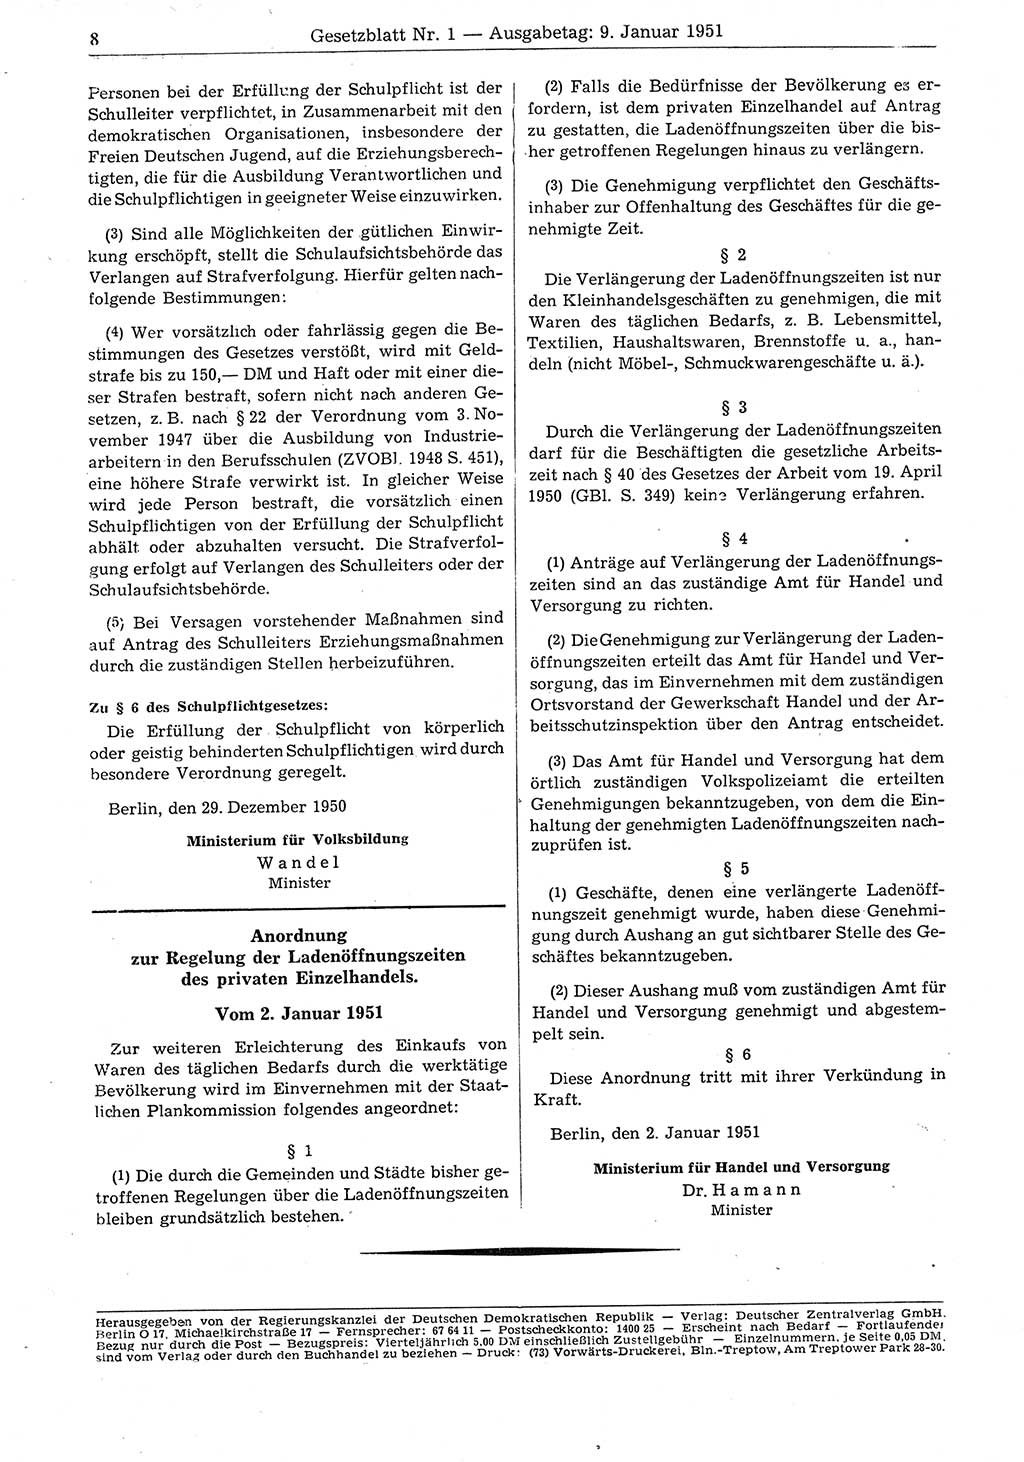 Gesetzblatt (GBl.) der Deutschen Demokratischen Republik (DDR) 1951, Seite 8 (GBl. DDR 1951, S. 8)